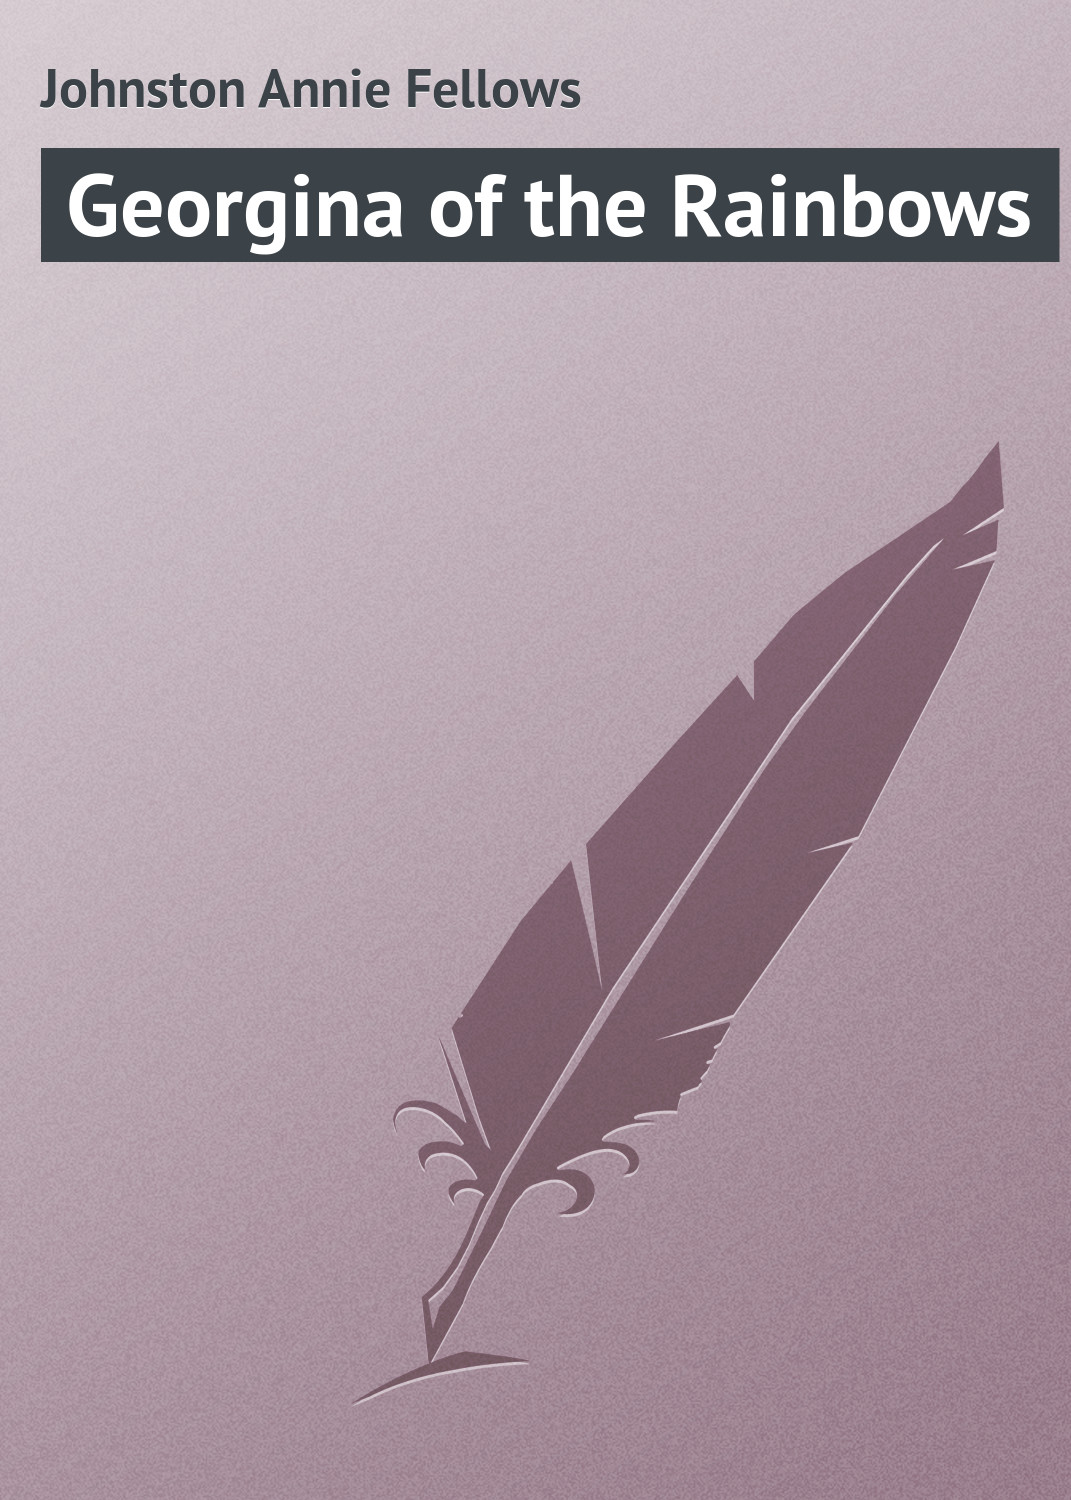 Книга Georgina of the Rainbows из серии , созданная Annie Johnston, может относится к жанру Зарубежная классика, Зарубежные детские книги. Стоимость электронной книги Georgina of the Rainbows с идентификатором 23154979 составляет 5.99 руб.